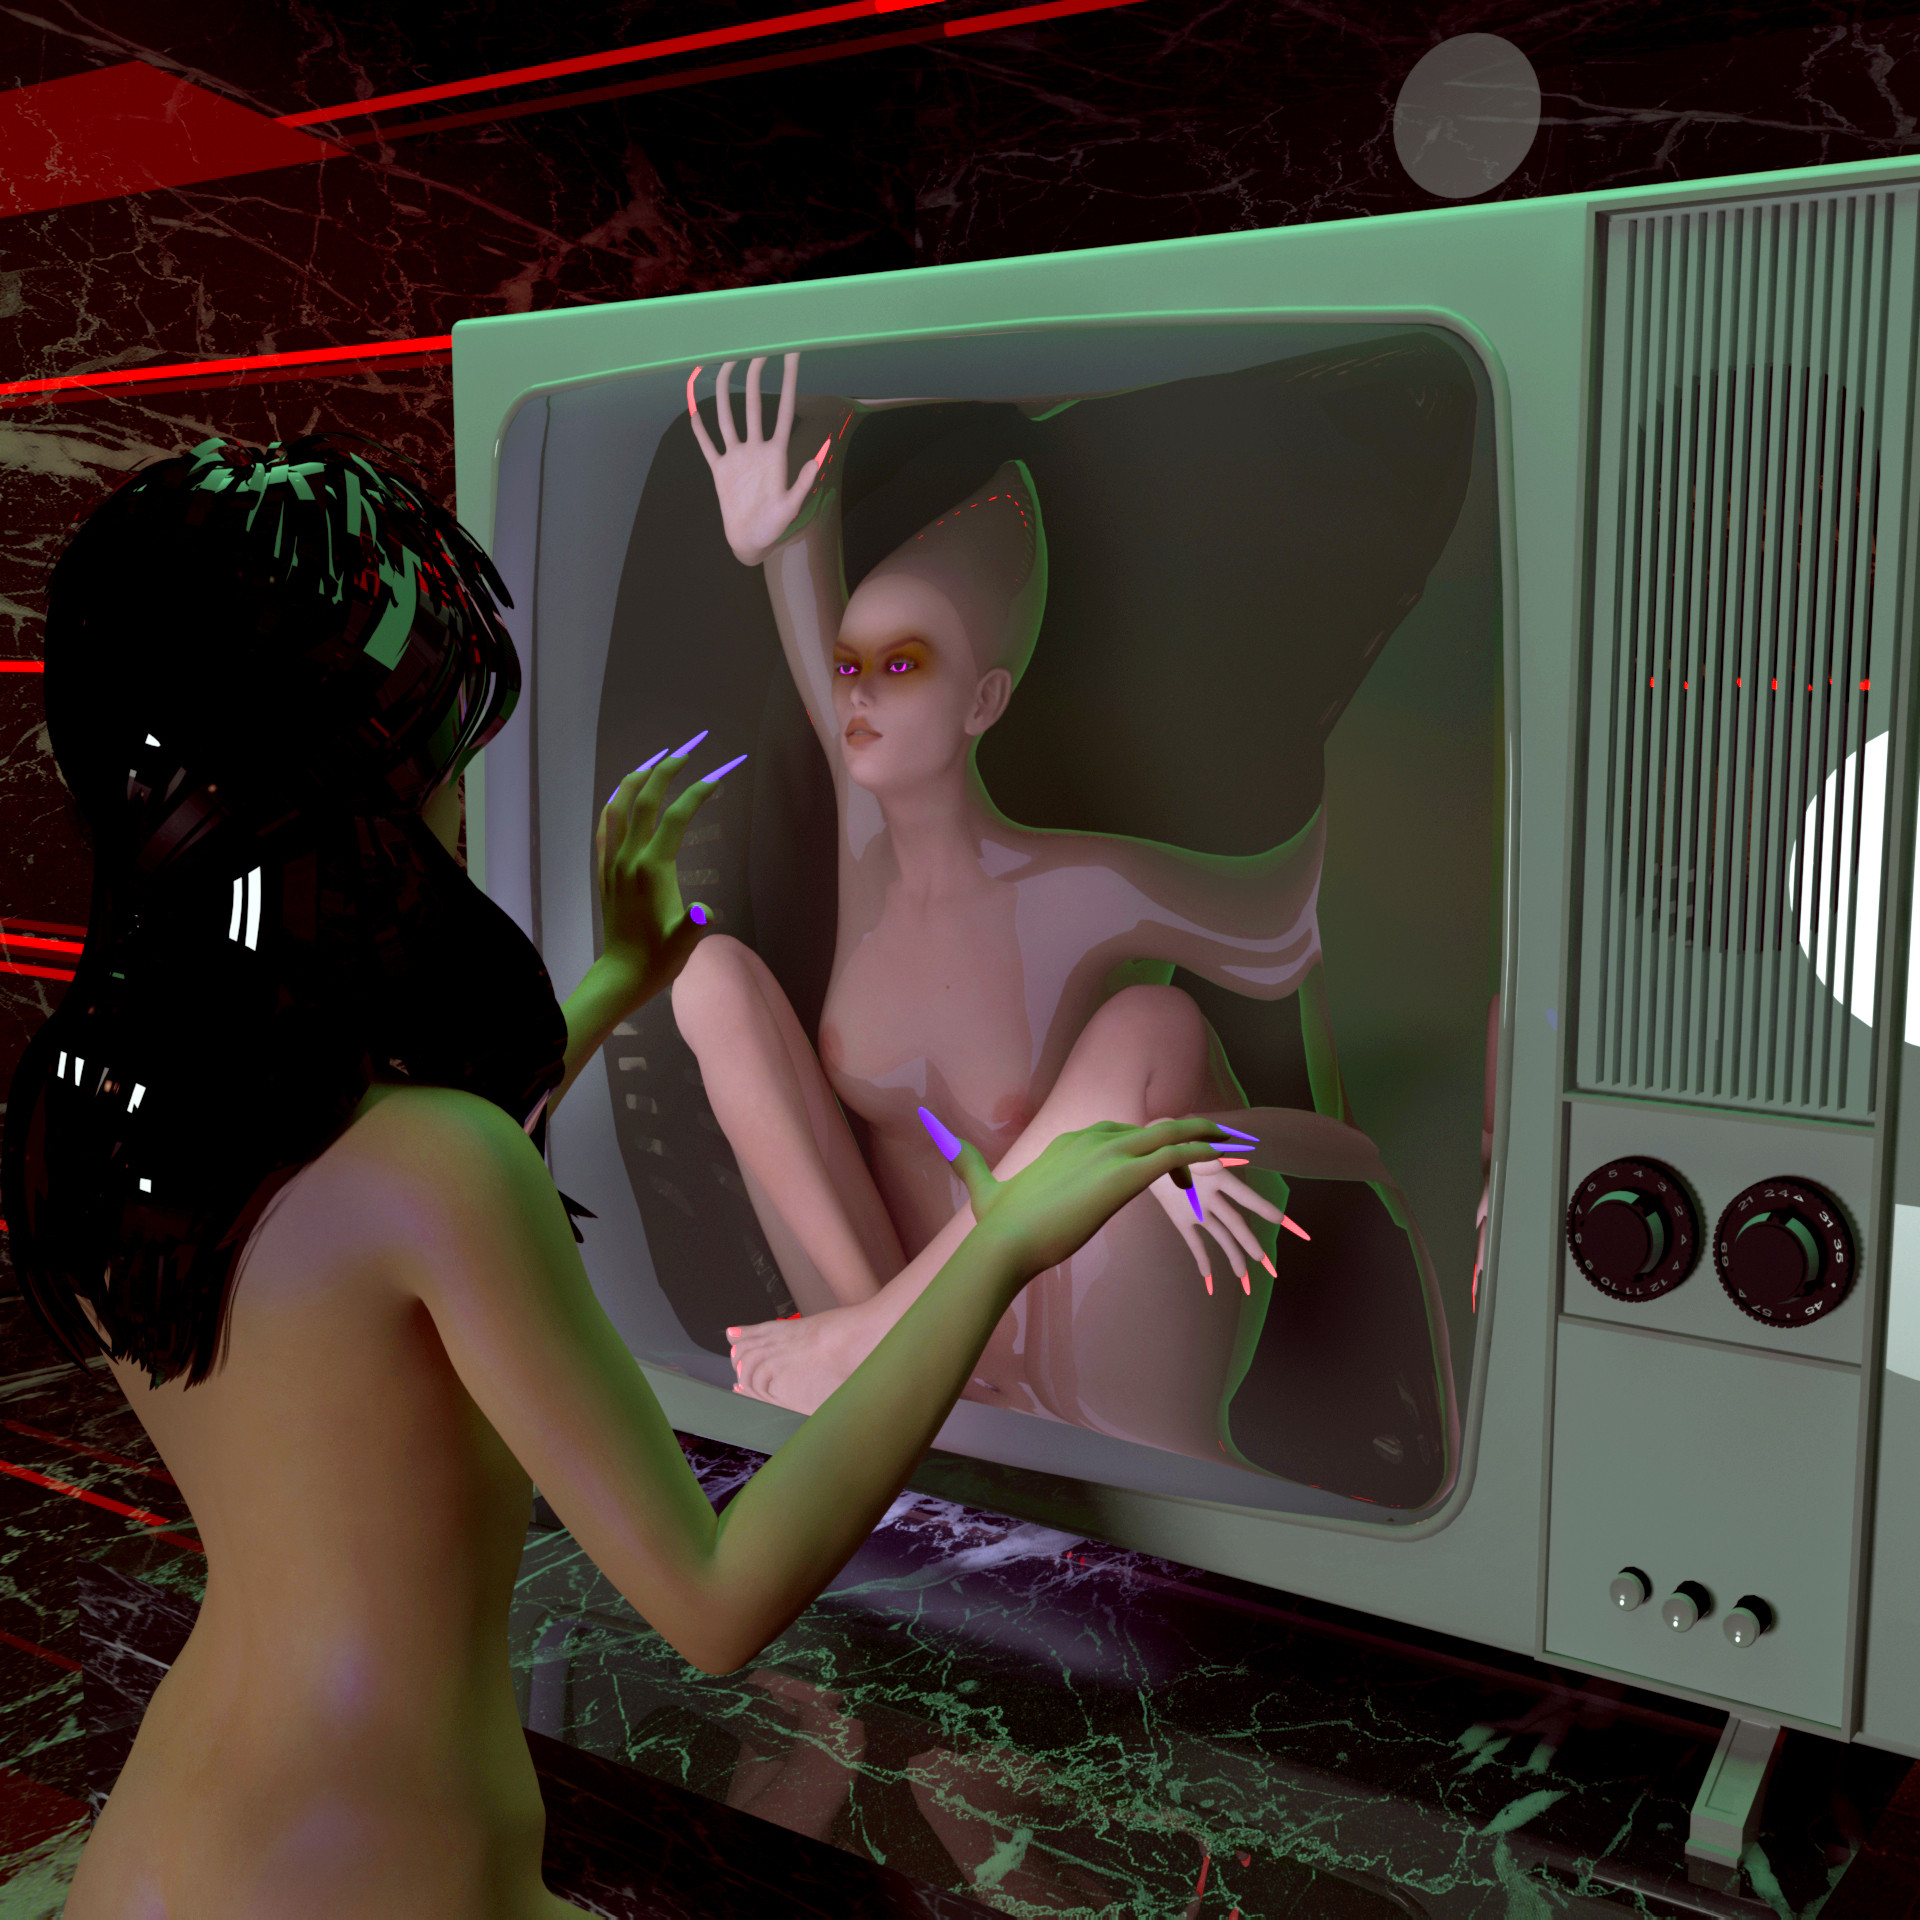 L’opera "Long Live the New Flesh" dell’artista Stacie Ant mostra un corpo nudo di donna di fronte di fronte a una televisione dove è intrappolata una figura femminile semi-mostruosa.